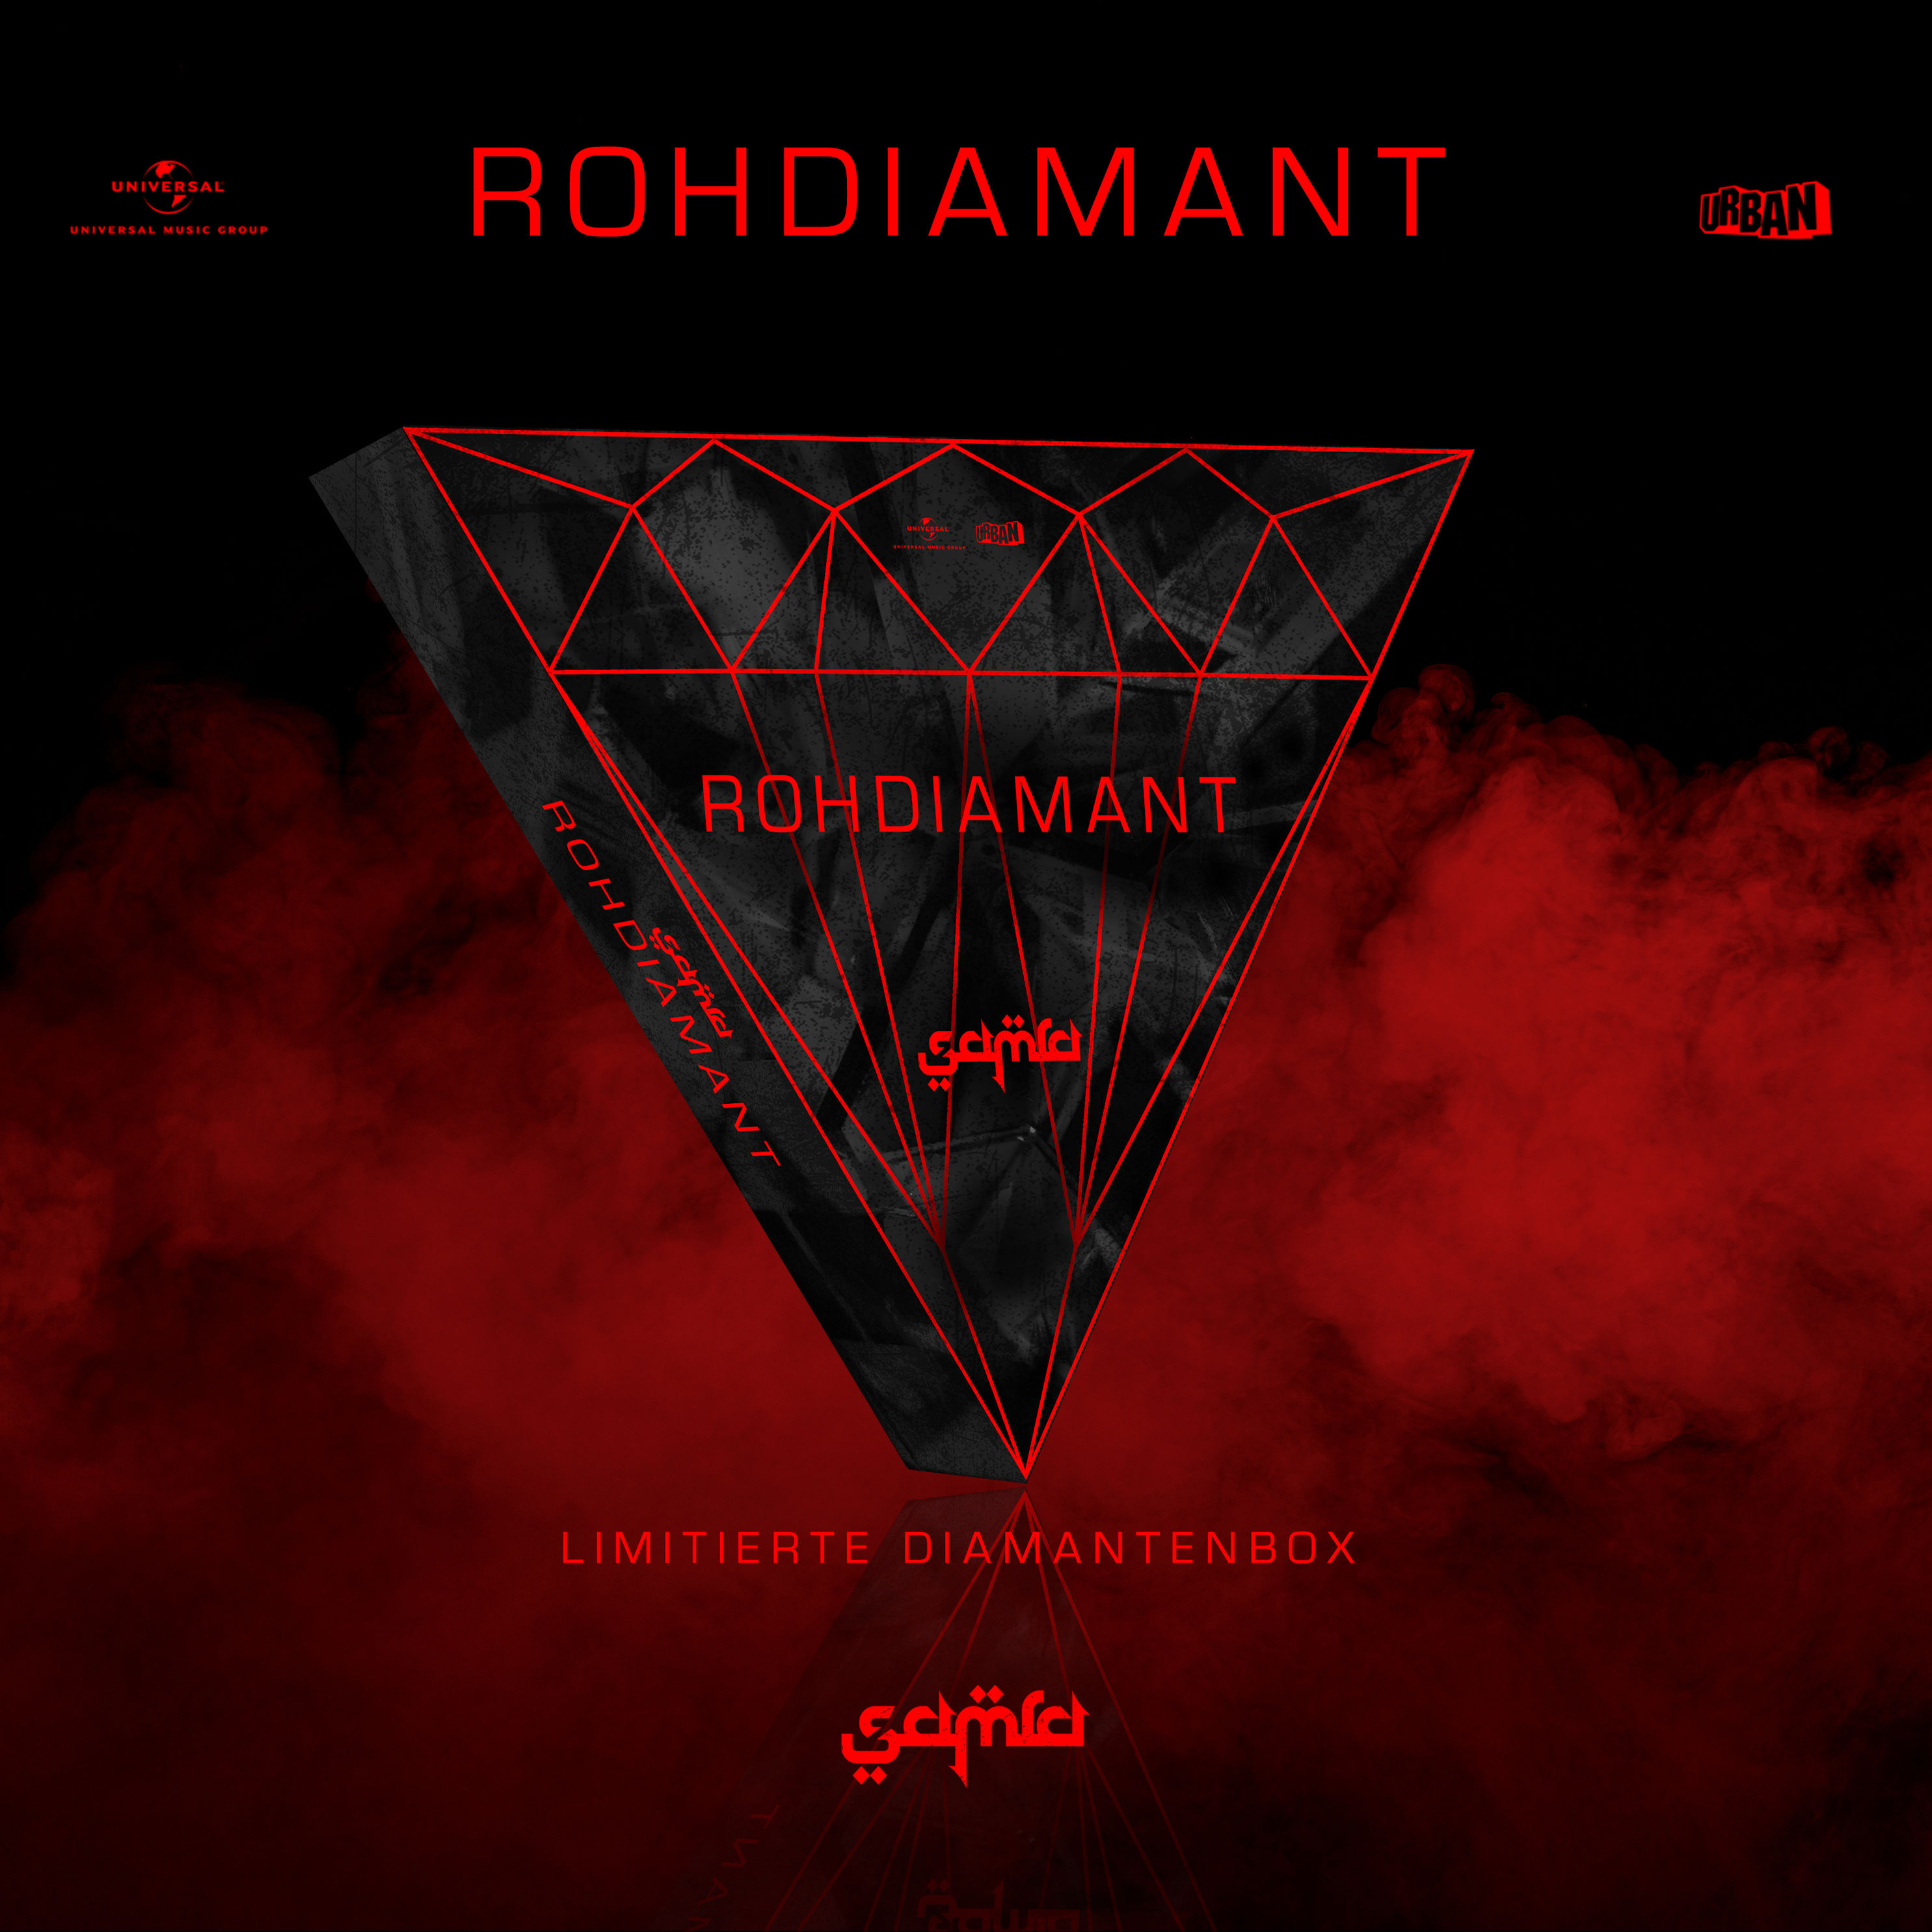 Rohdiamant Limited Deluxe Box inkl. Shirt Größe L von Samra | Weltbild.at